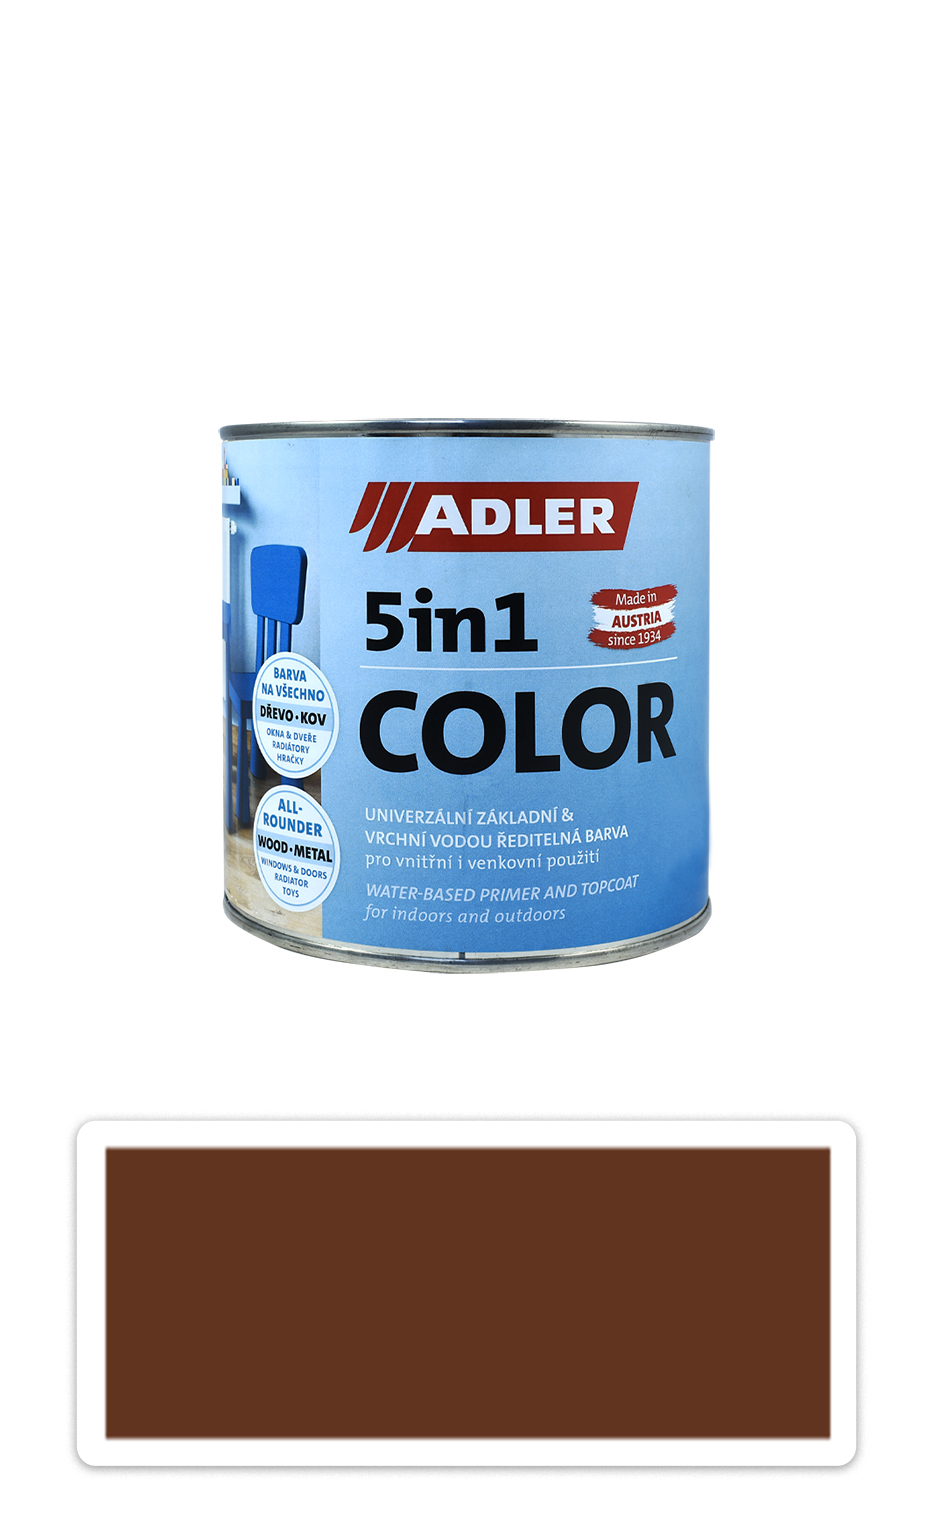 ADLER 5in1 Color - univerzální vodou ředitelná barva 0.75 l Rehbraun / Světle žlutohnědá RAL 8007